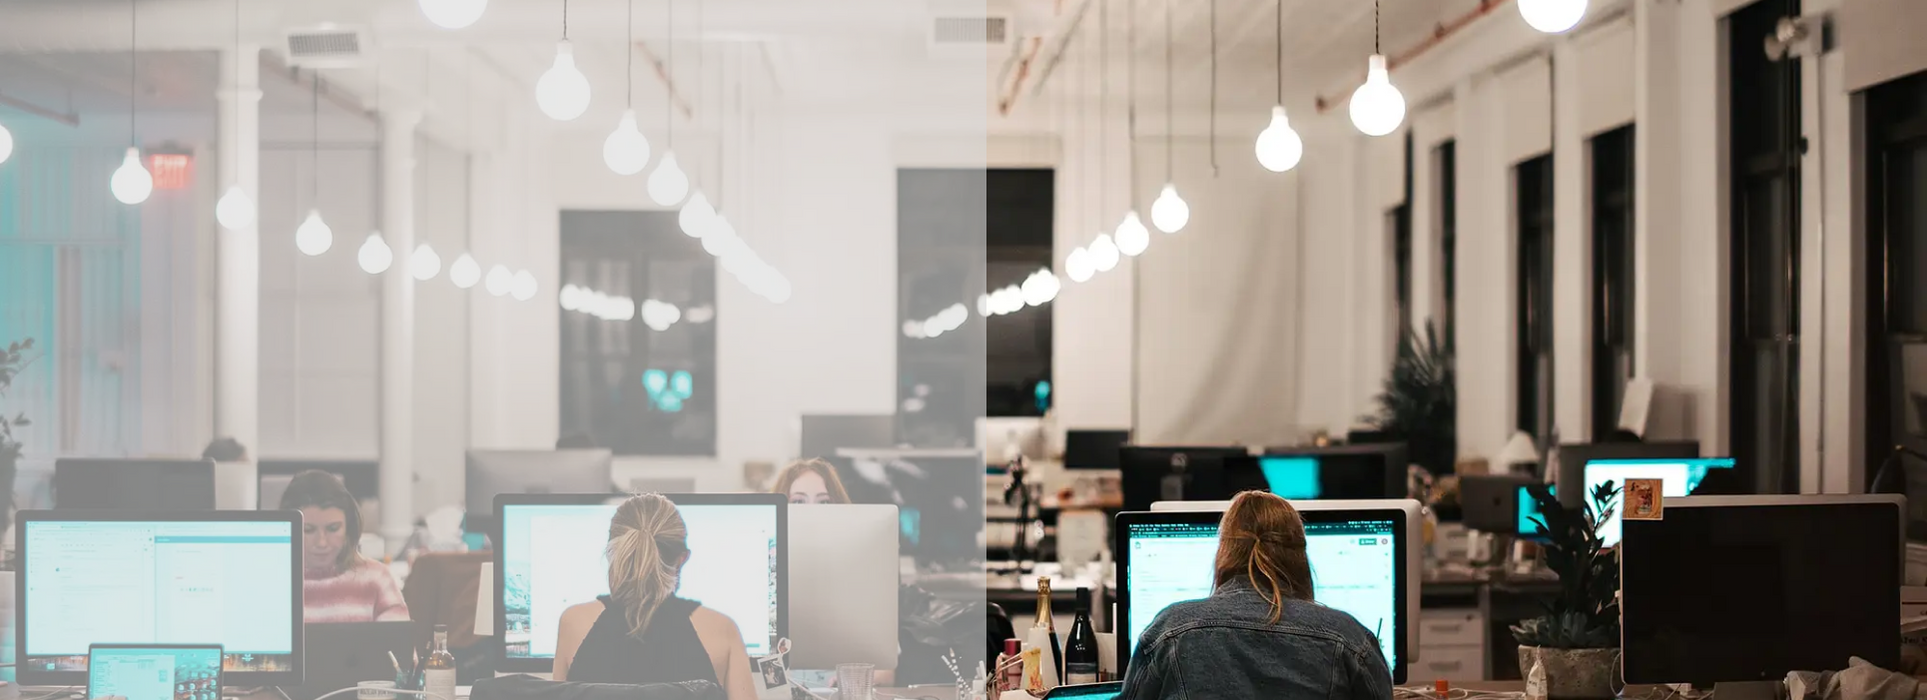 Smart Workplace Technology - Guida completa all'illuminazione sul posto di lavoro